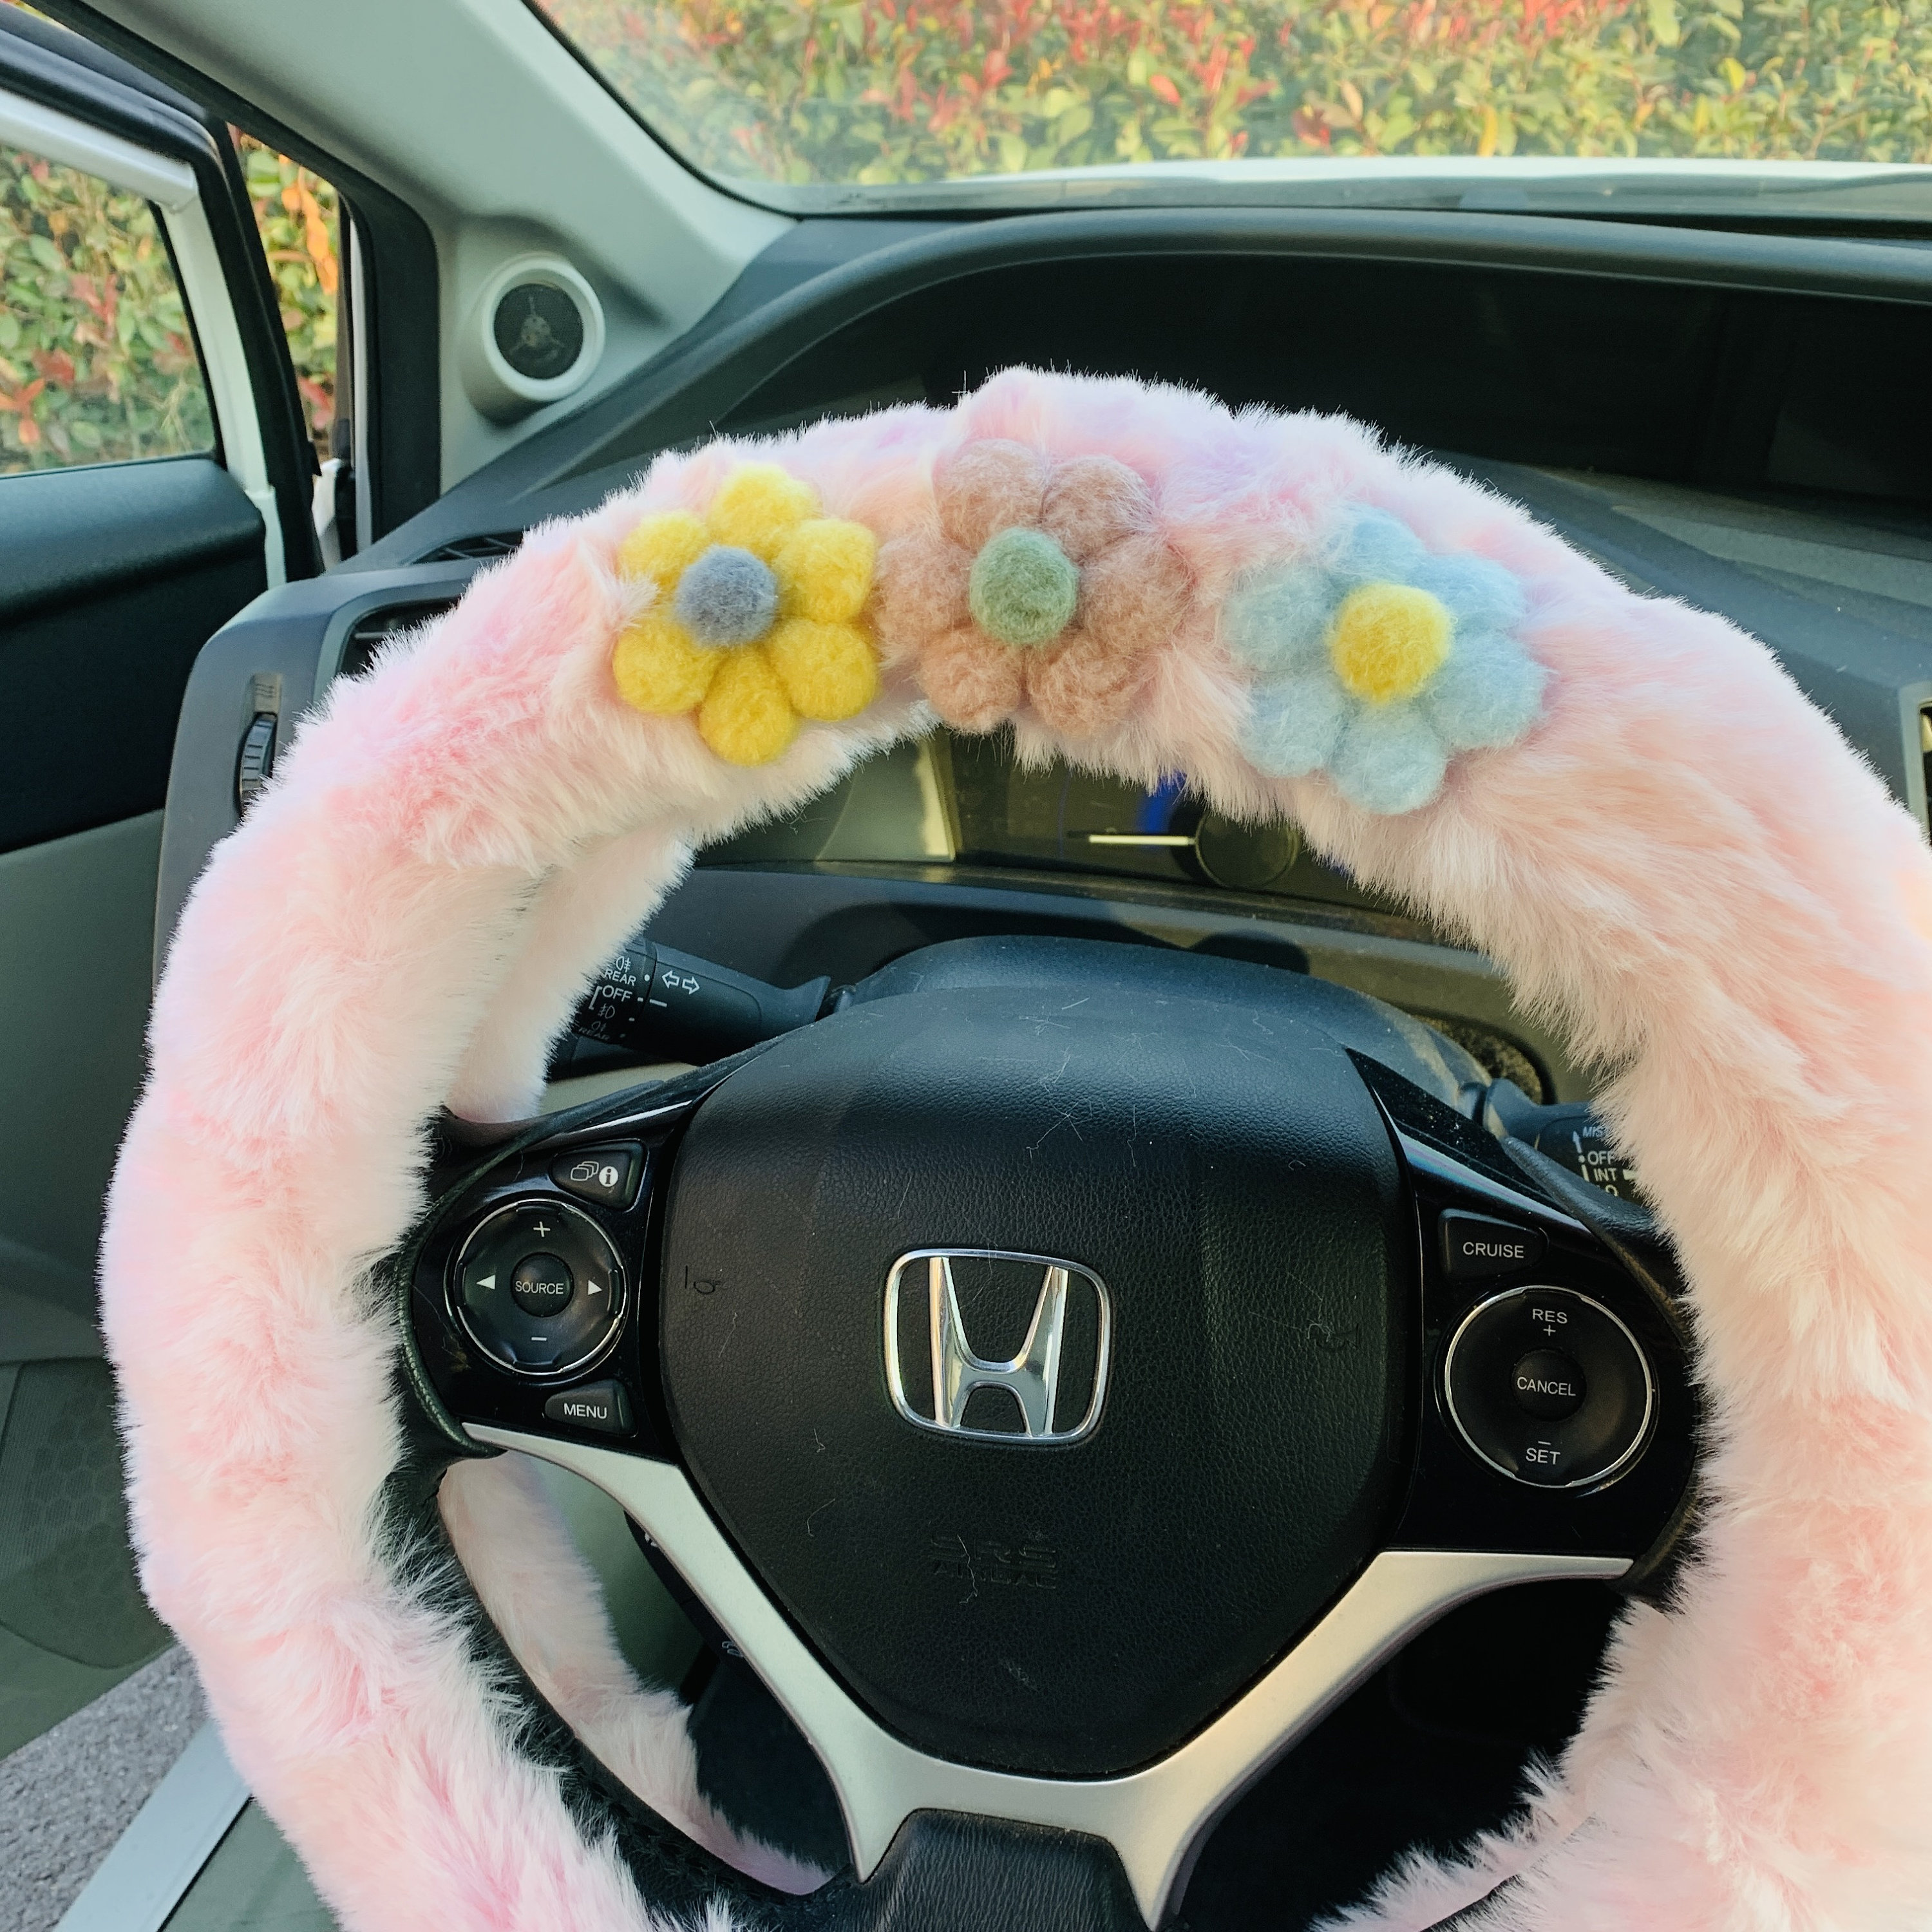 Steering Wheel Cover Cute Smiley Cloud for Women, Kawaii Leaf Seat